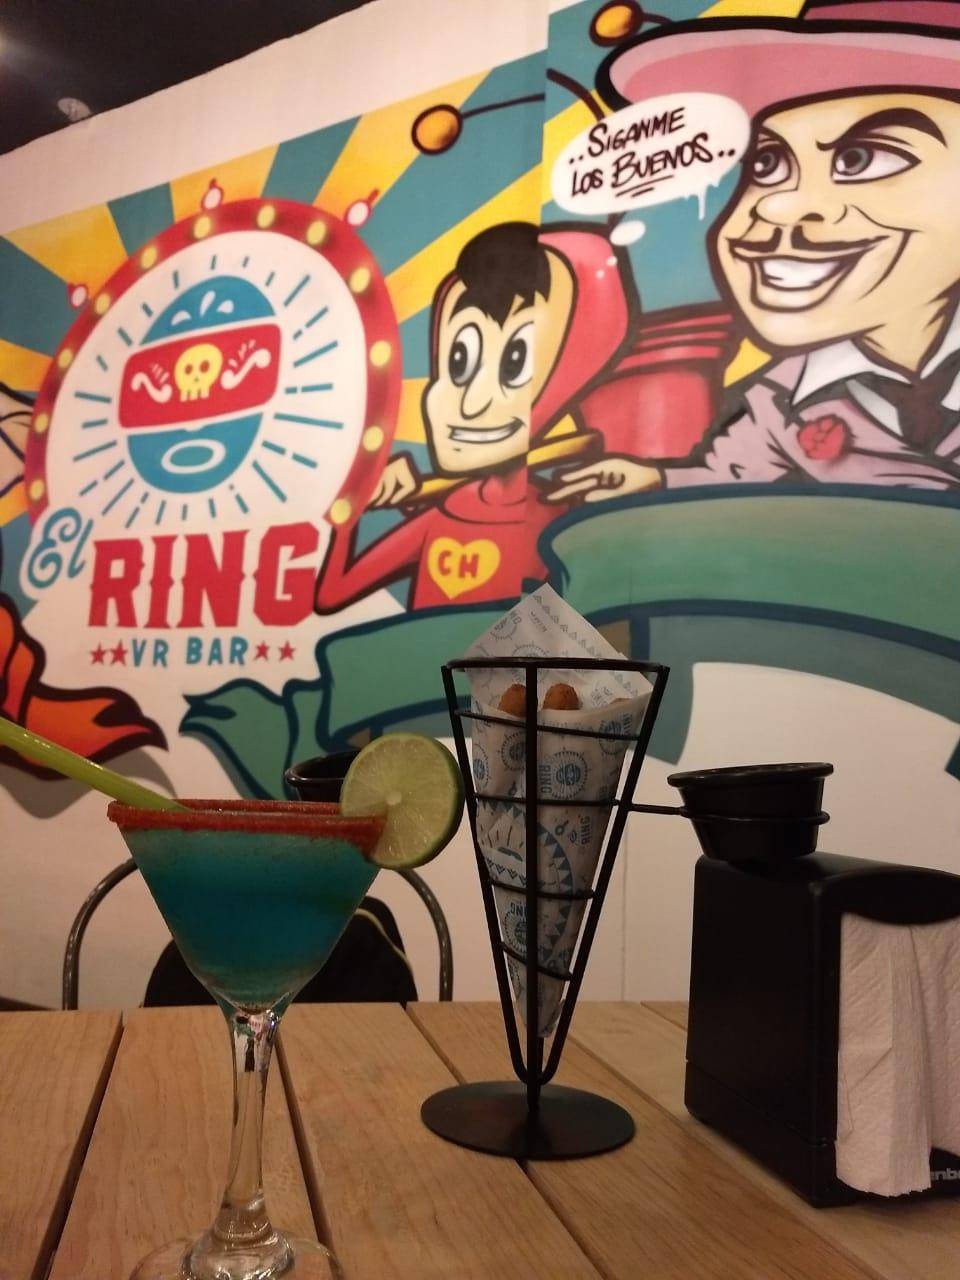 El Ring VR Bar: El primer bar de realidad virtual a la mexicana 2